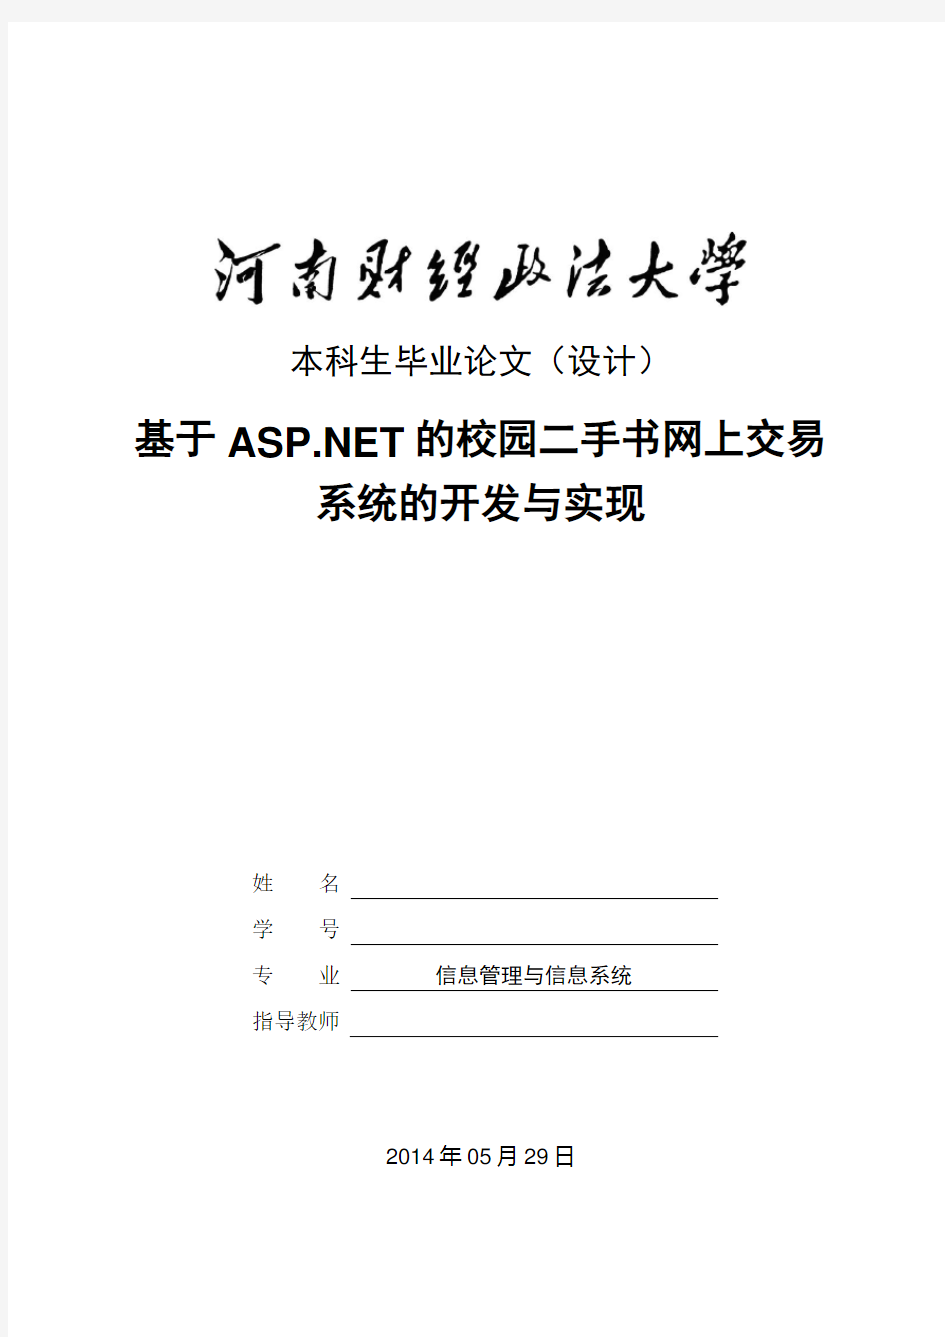 基于ASP NET的校园二手书网上交易系统的开发与实现